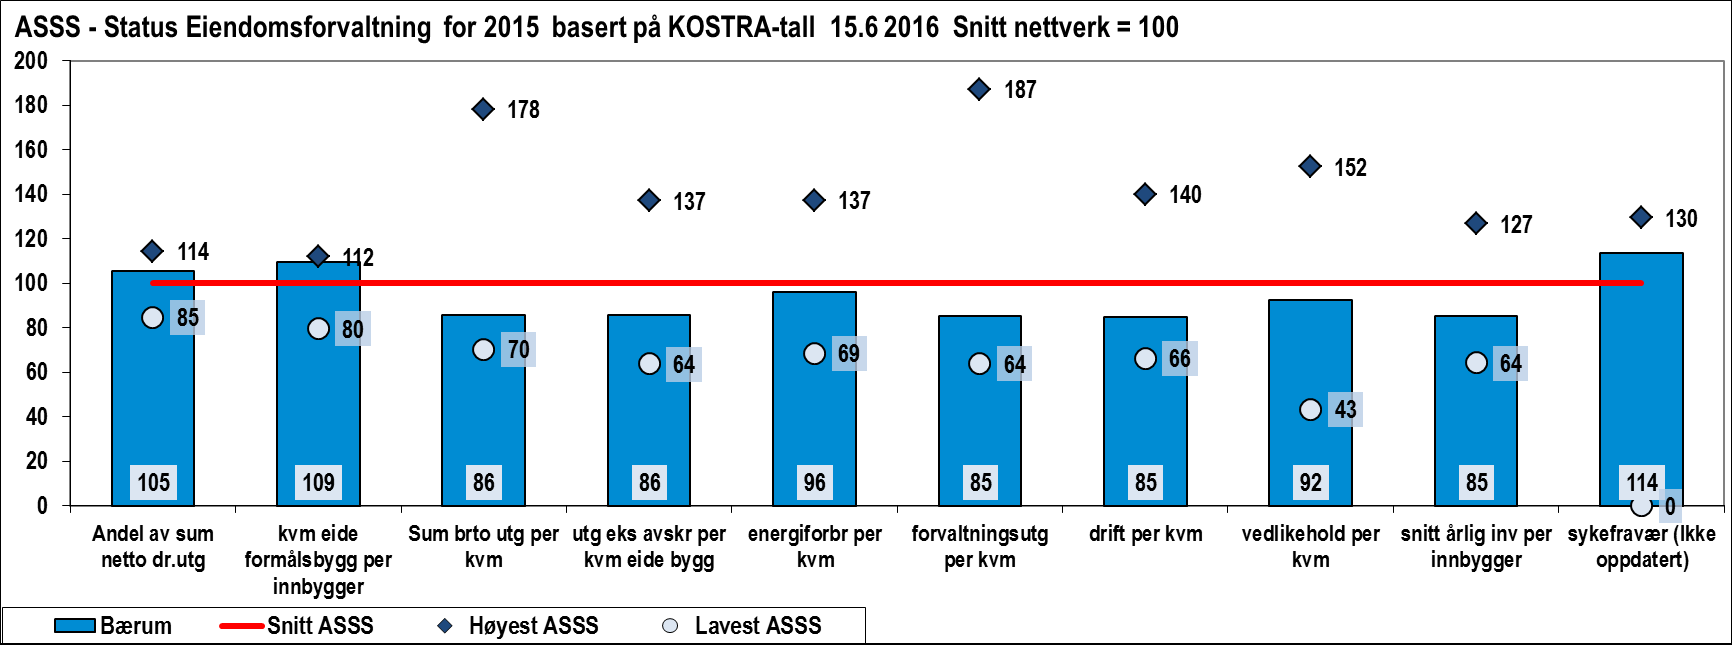 Indikator Bærum Snitt ASSS Korrigerte brutto driftsutgifter til kommunal eiendomsforvaltning per m2 i kroner (NOK) Lavest ASSS Høyest ASSS 1110 1293,3 909,0 2306,0 Sum brutto driftsutgifter eks avskr